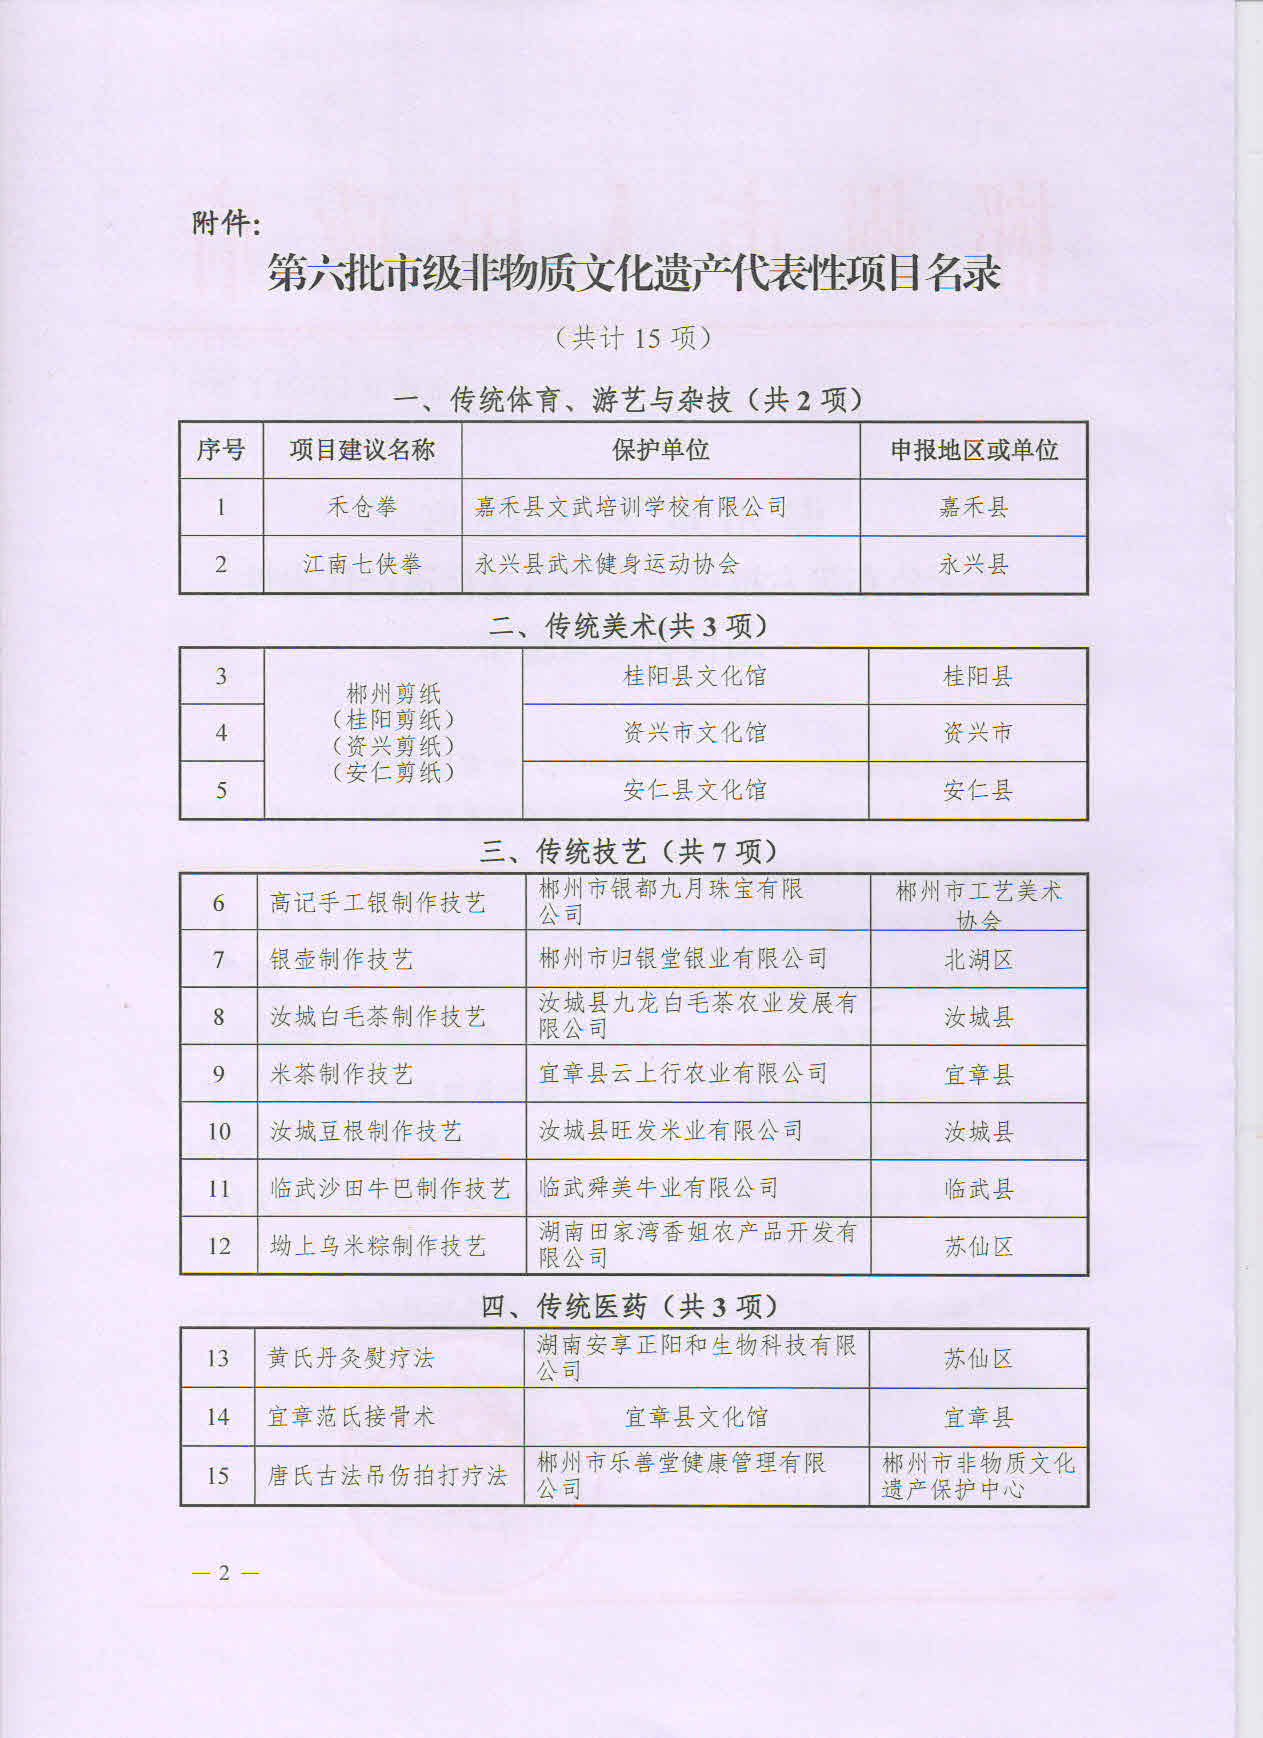 郴州市人民政府关于公布第六批市级非遗代表性项目名录的通知(1)_页面_2.jpg